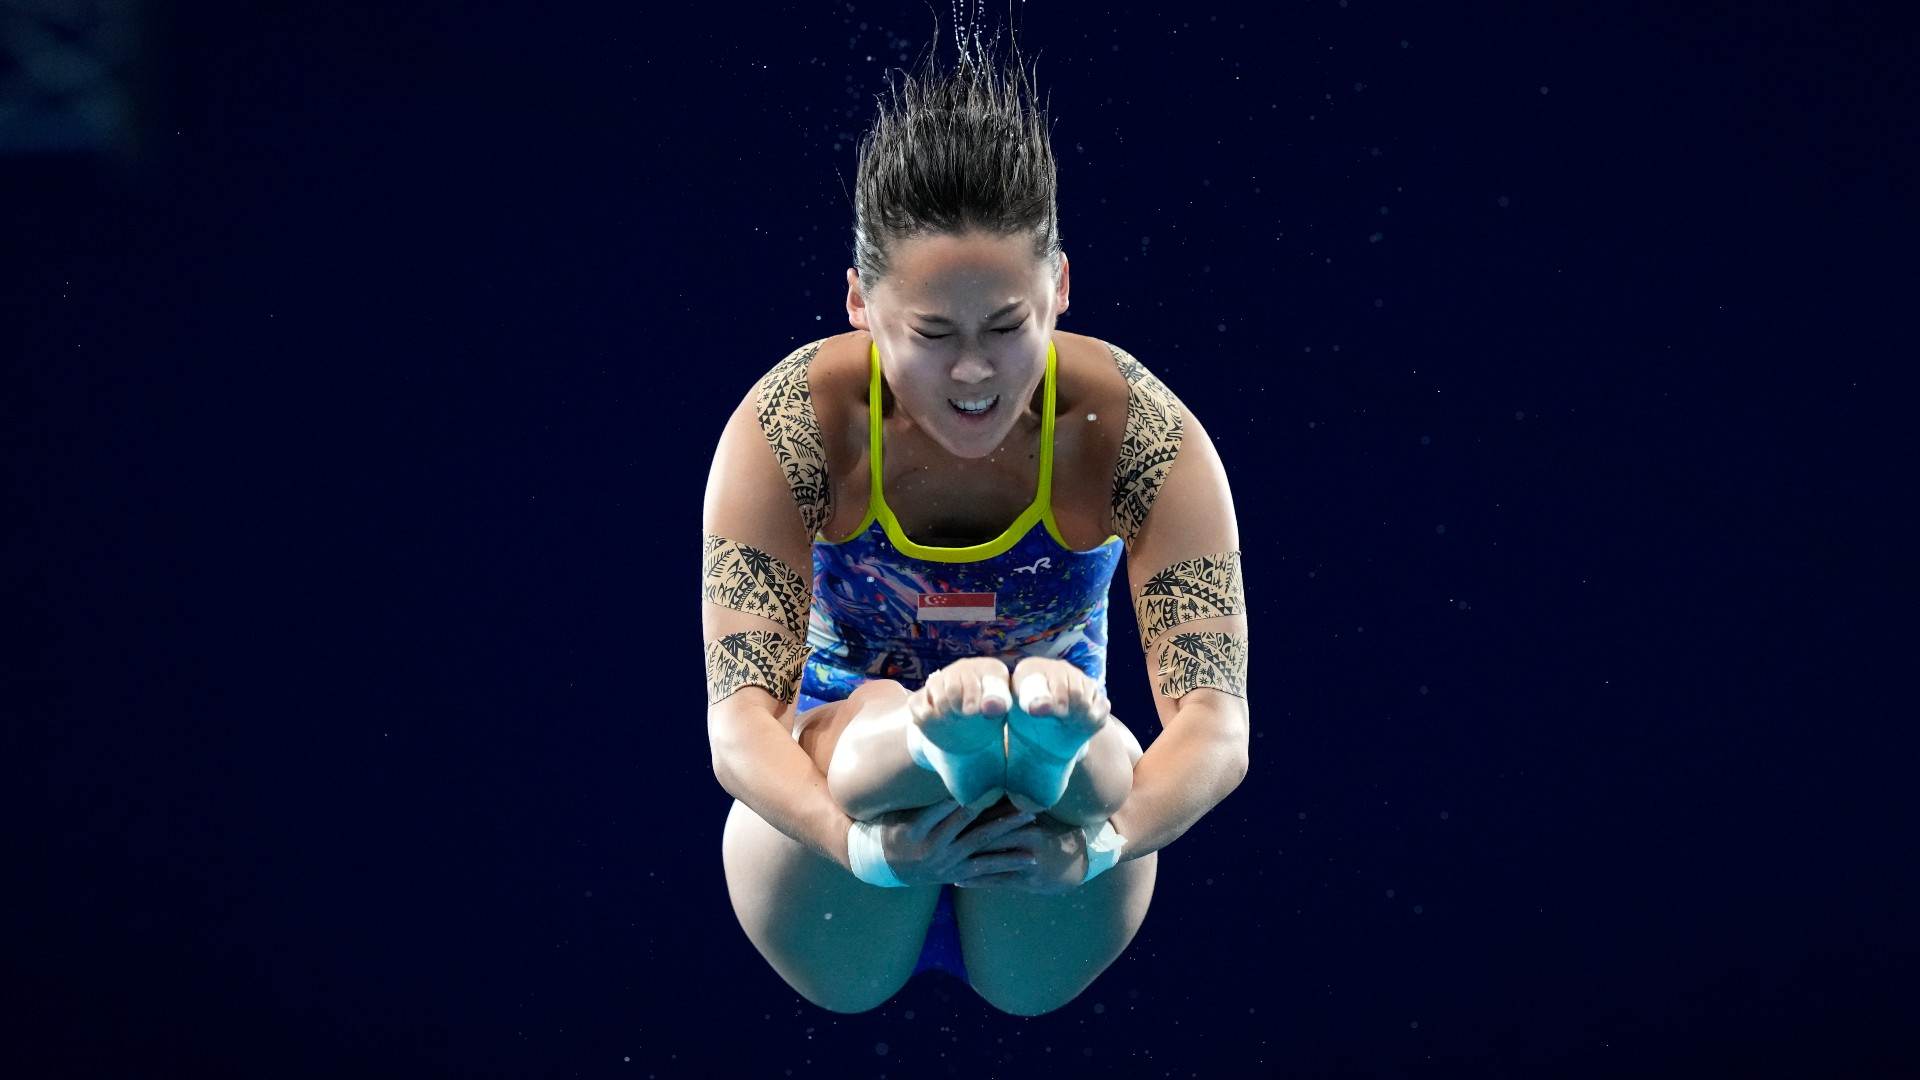 Saltadora usa fita para dar segurança muscular durante mergulho nas Olimpíadas d